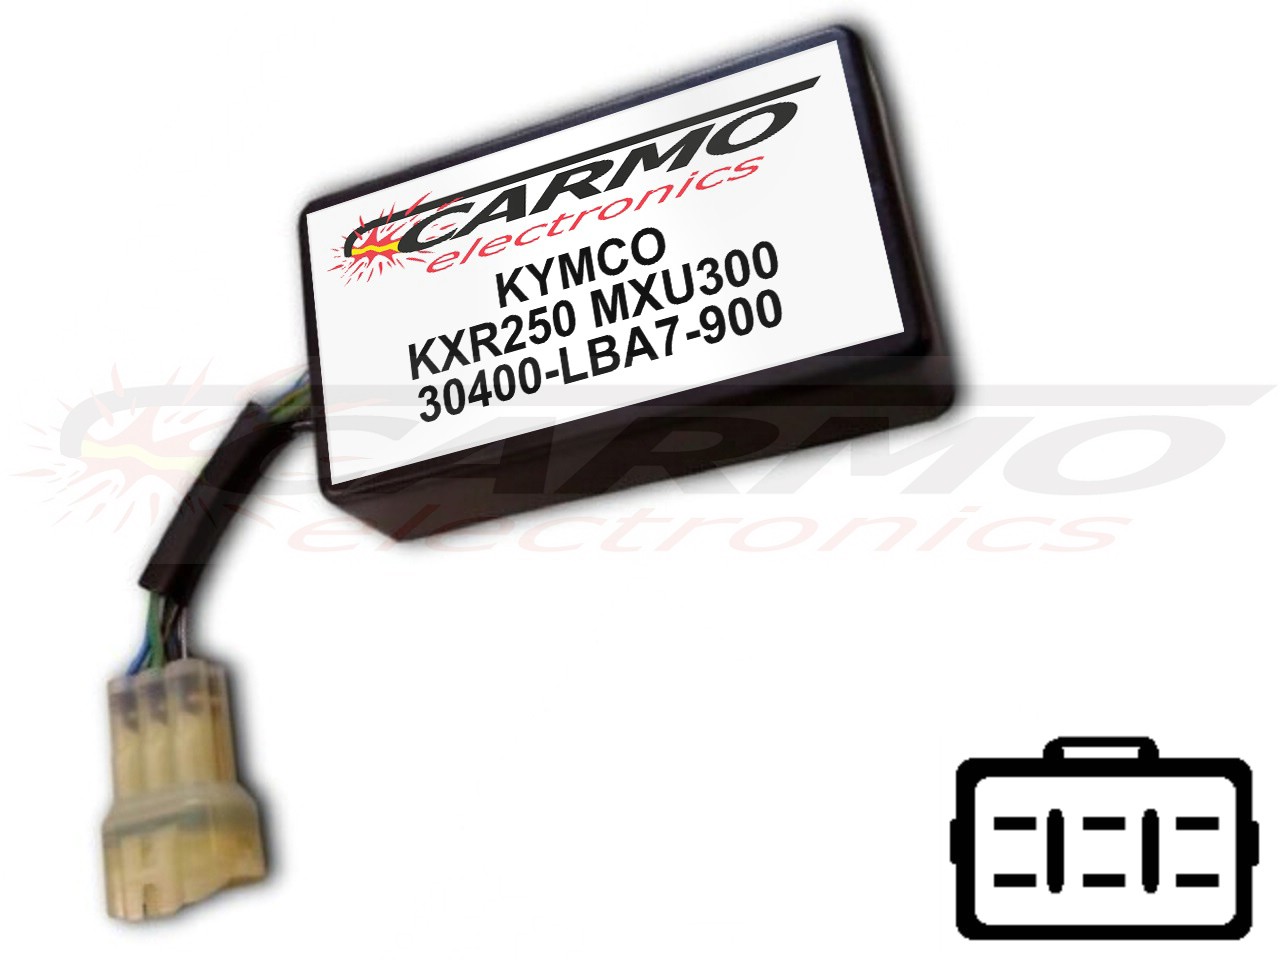 Kymco KXR250 MXU250 イグナイター点火モジュールCDI/TCIボックス (30400-LBA7-900, CT-LBA7-00) - 画像をクリックして閉じる